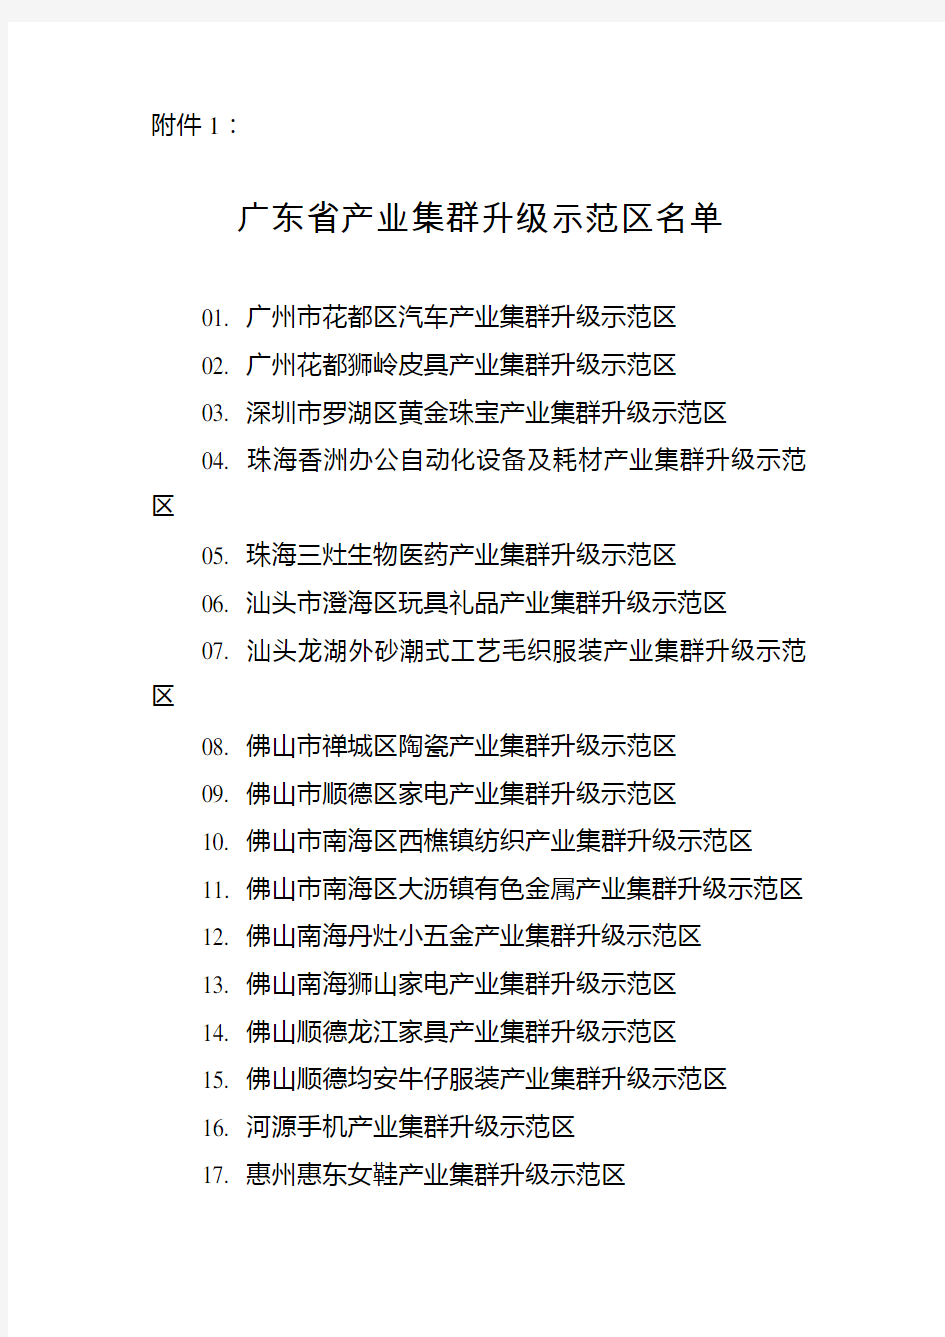 广东省产业集群升级示范区名单